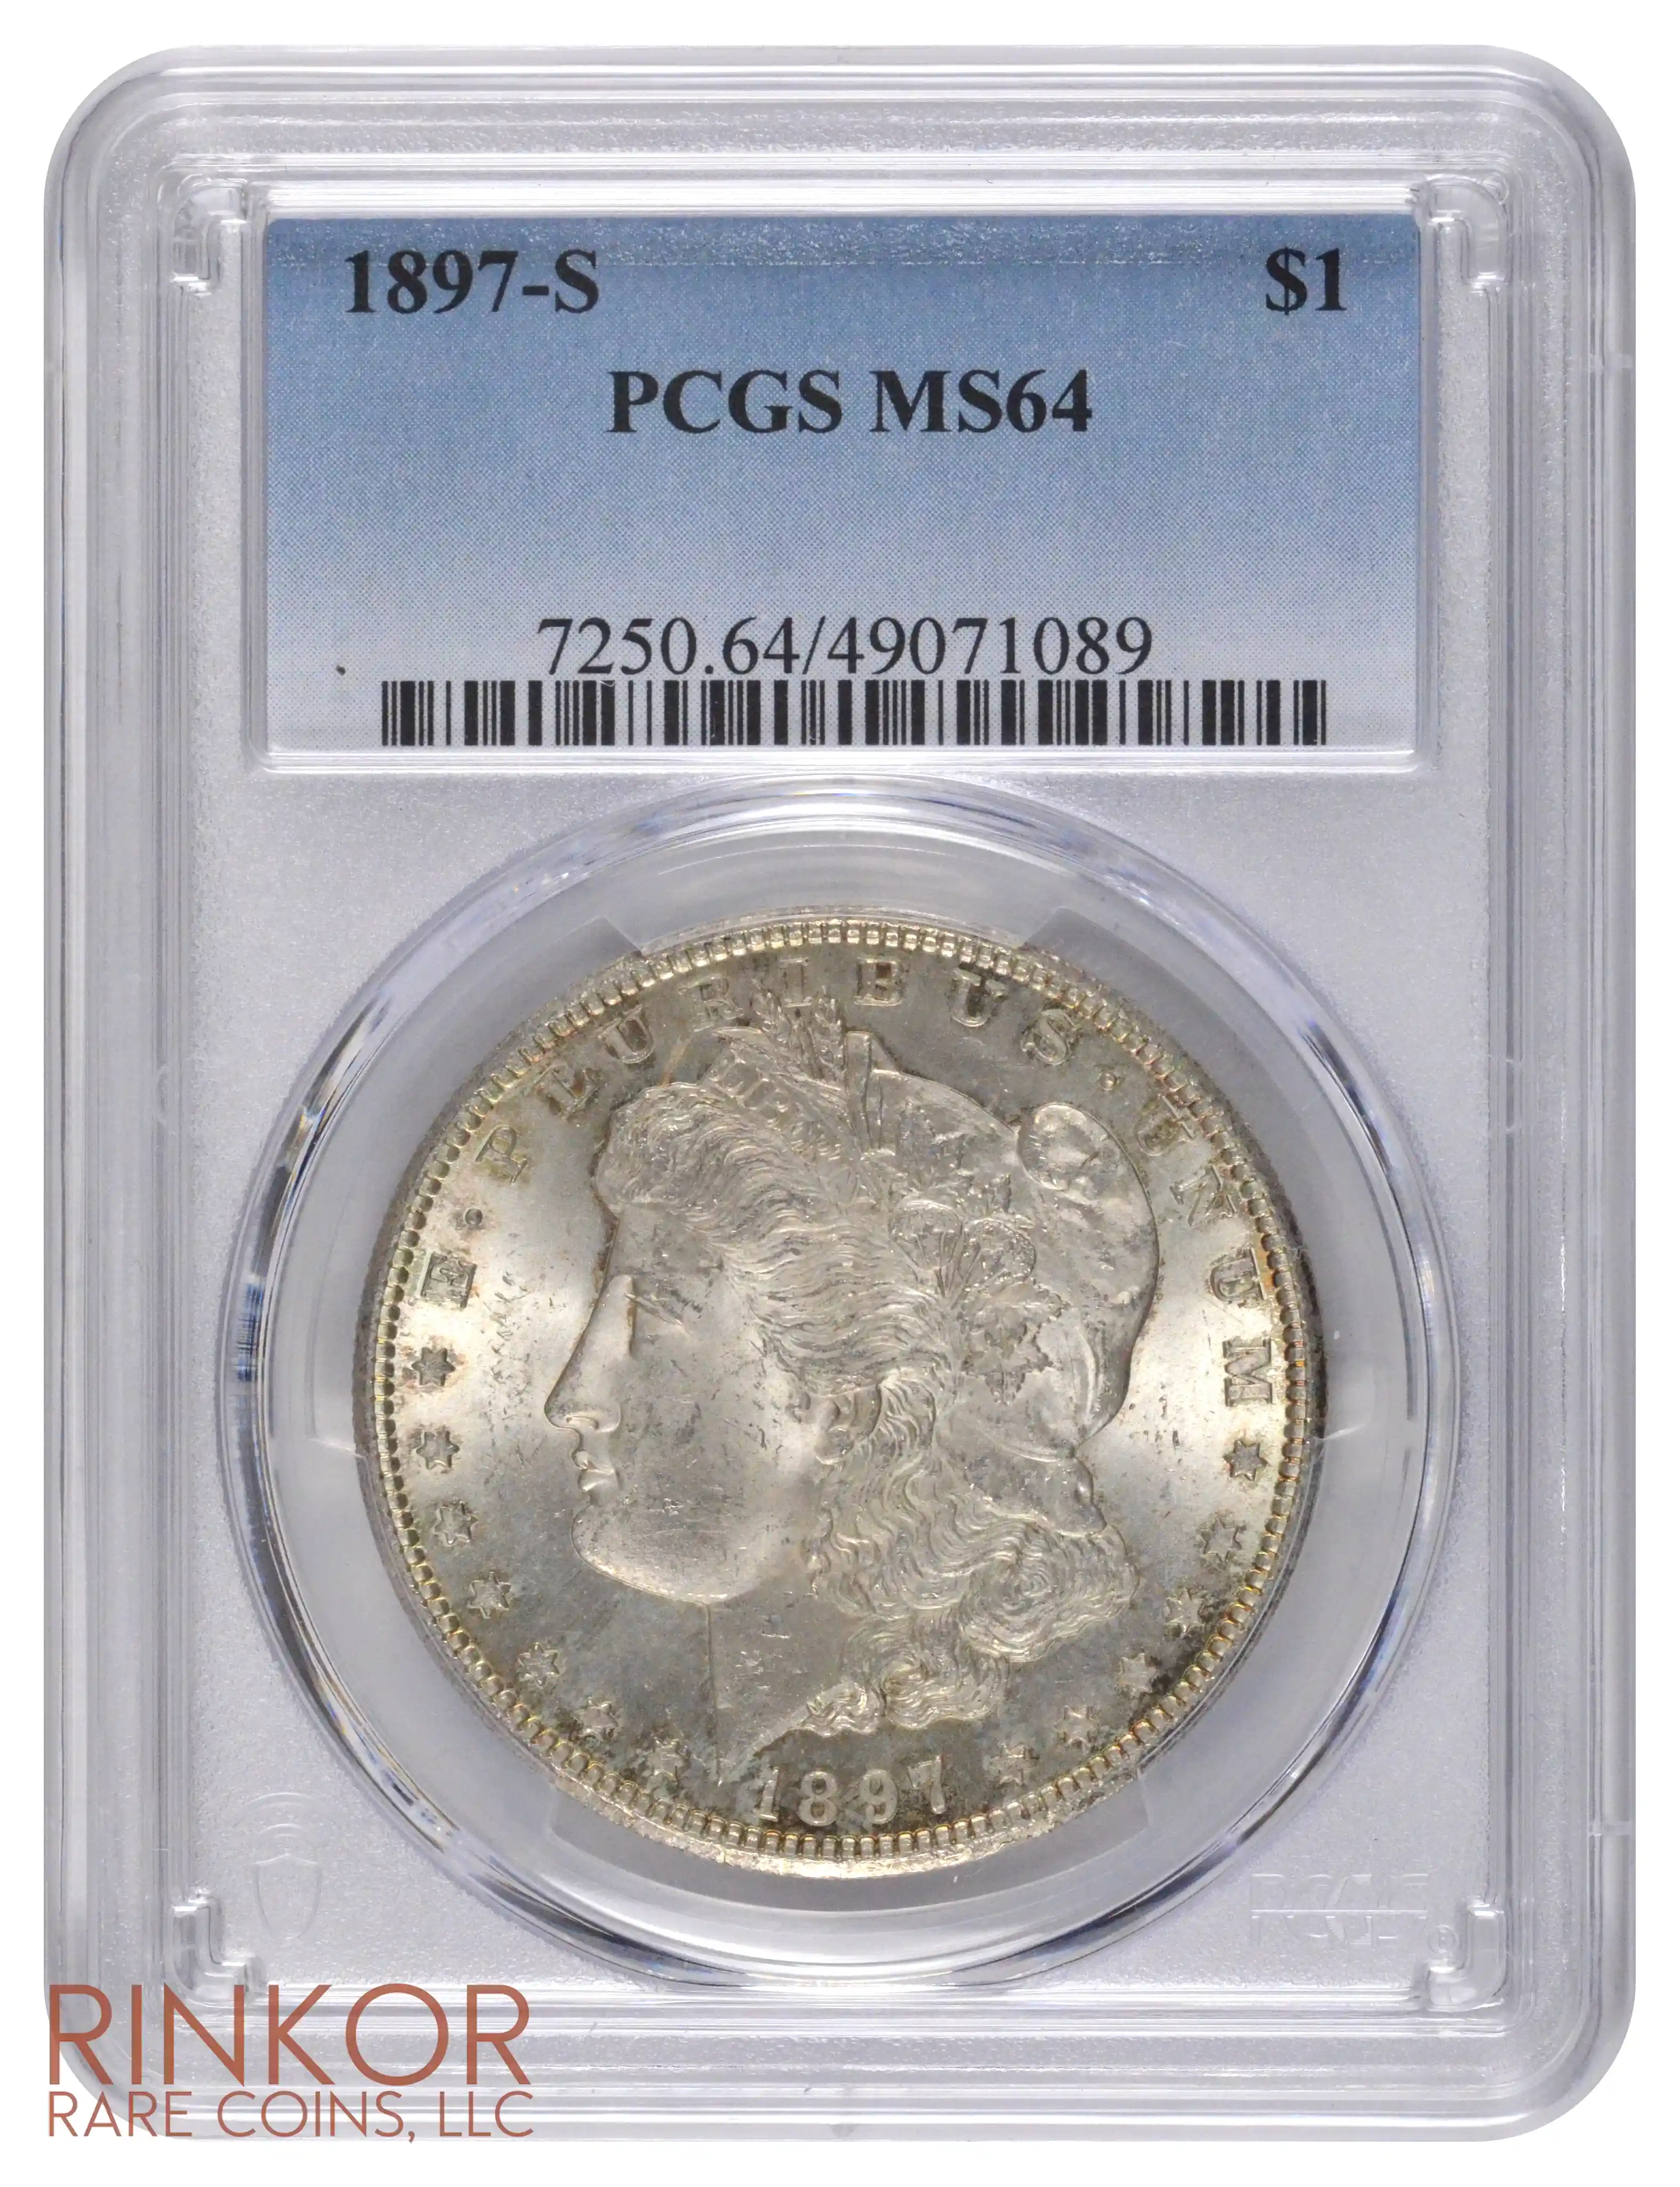 1897-S $1 PCGS MS 64